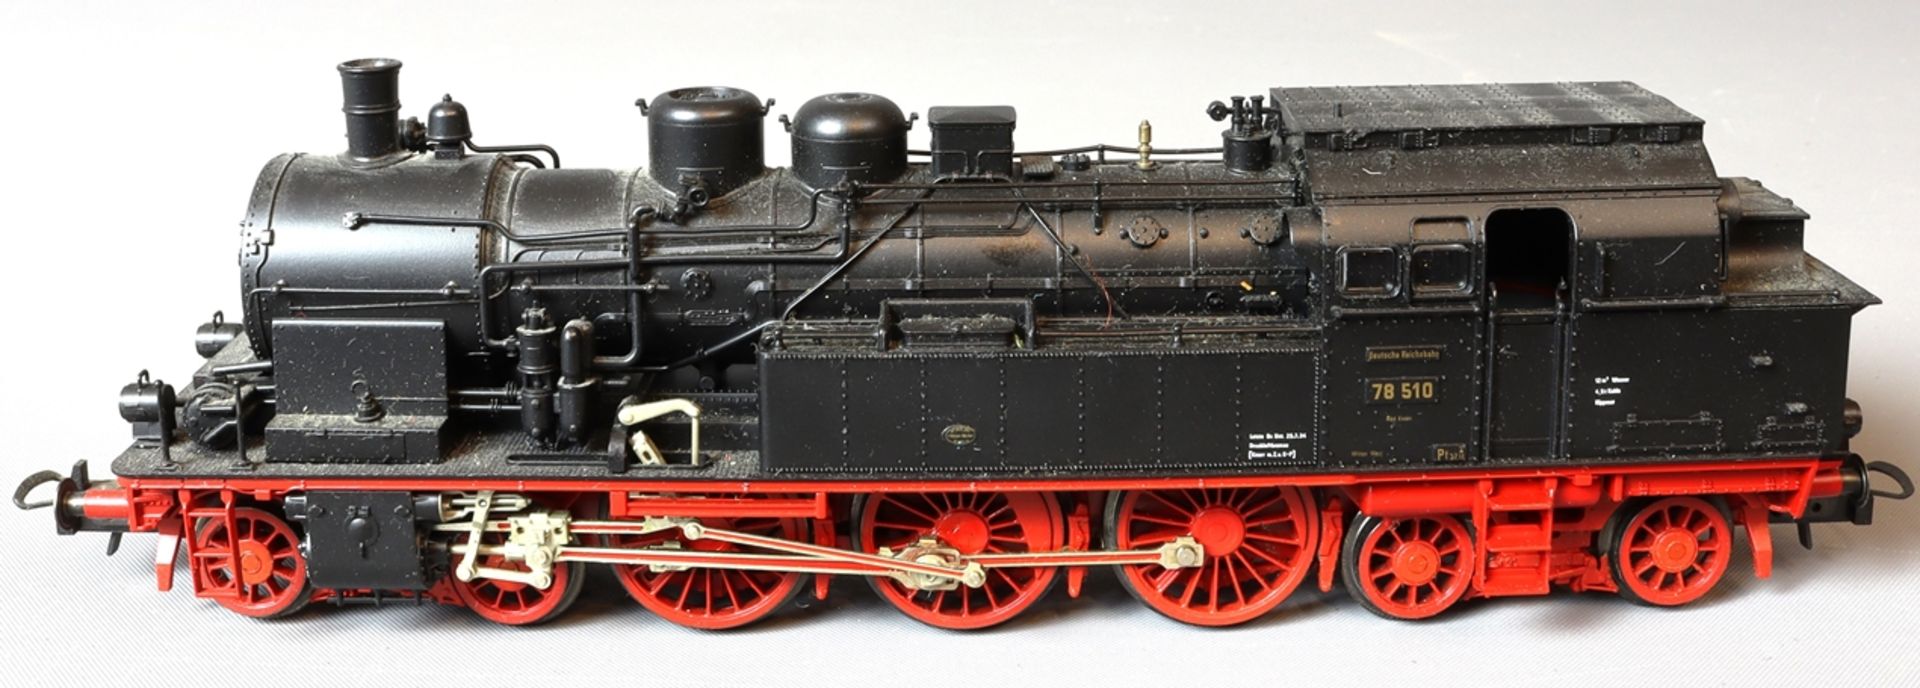 Fleischmann steam locomotive 78 510, second half of the 20th century, German